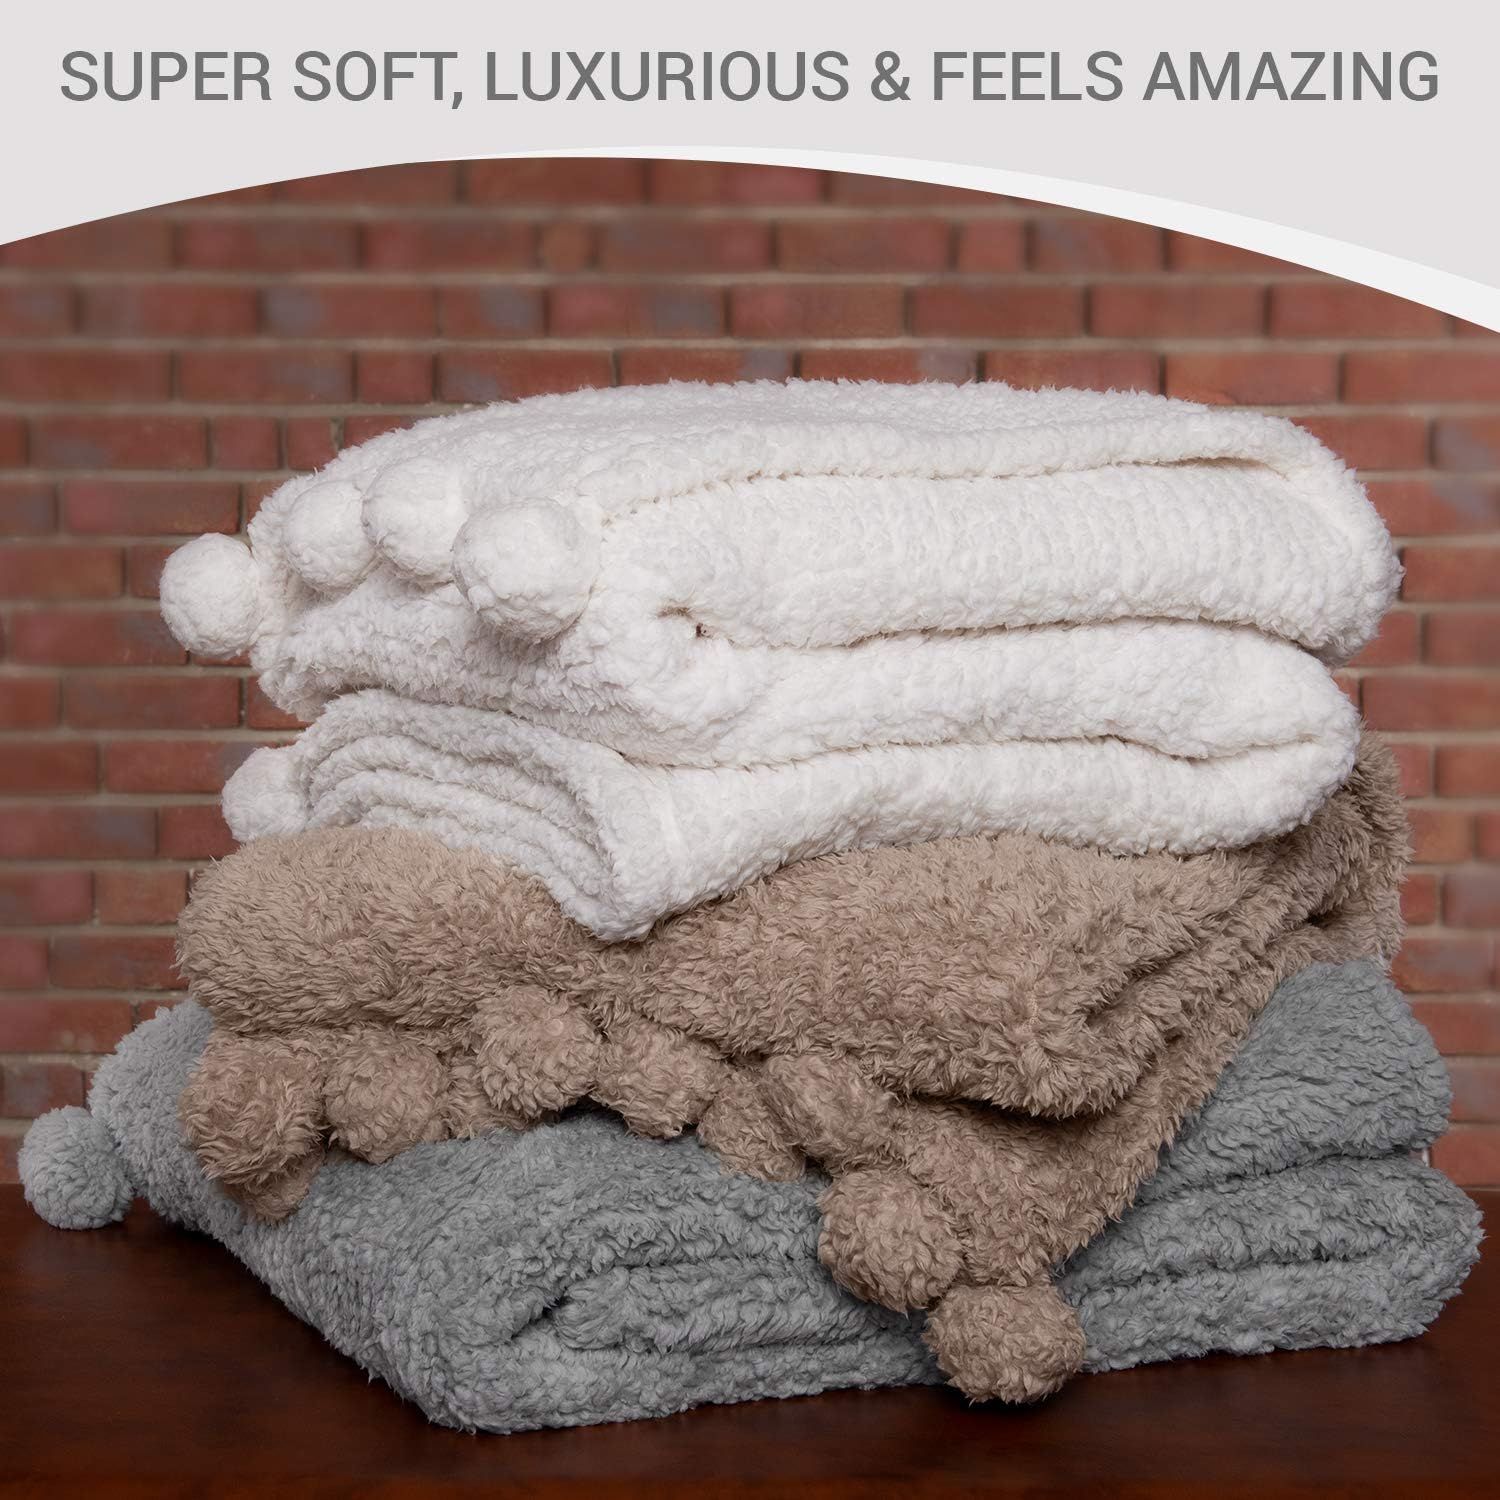 Throw Blanket for Couch - 50x60, Grey with Pom Poms - Fuzzy, Fluffy, Plush, Soft, Cozy, Warm Flee... | Amazon (US)